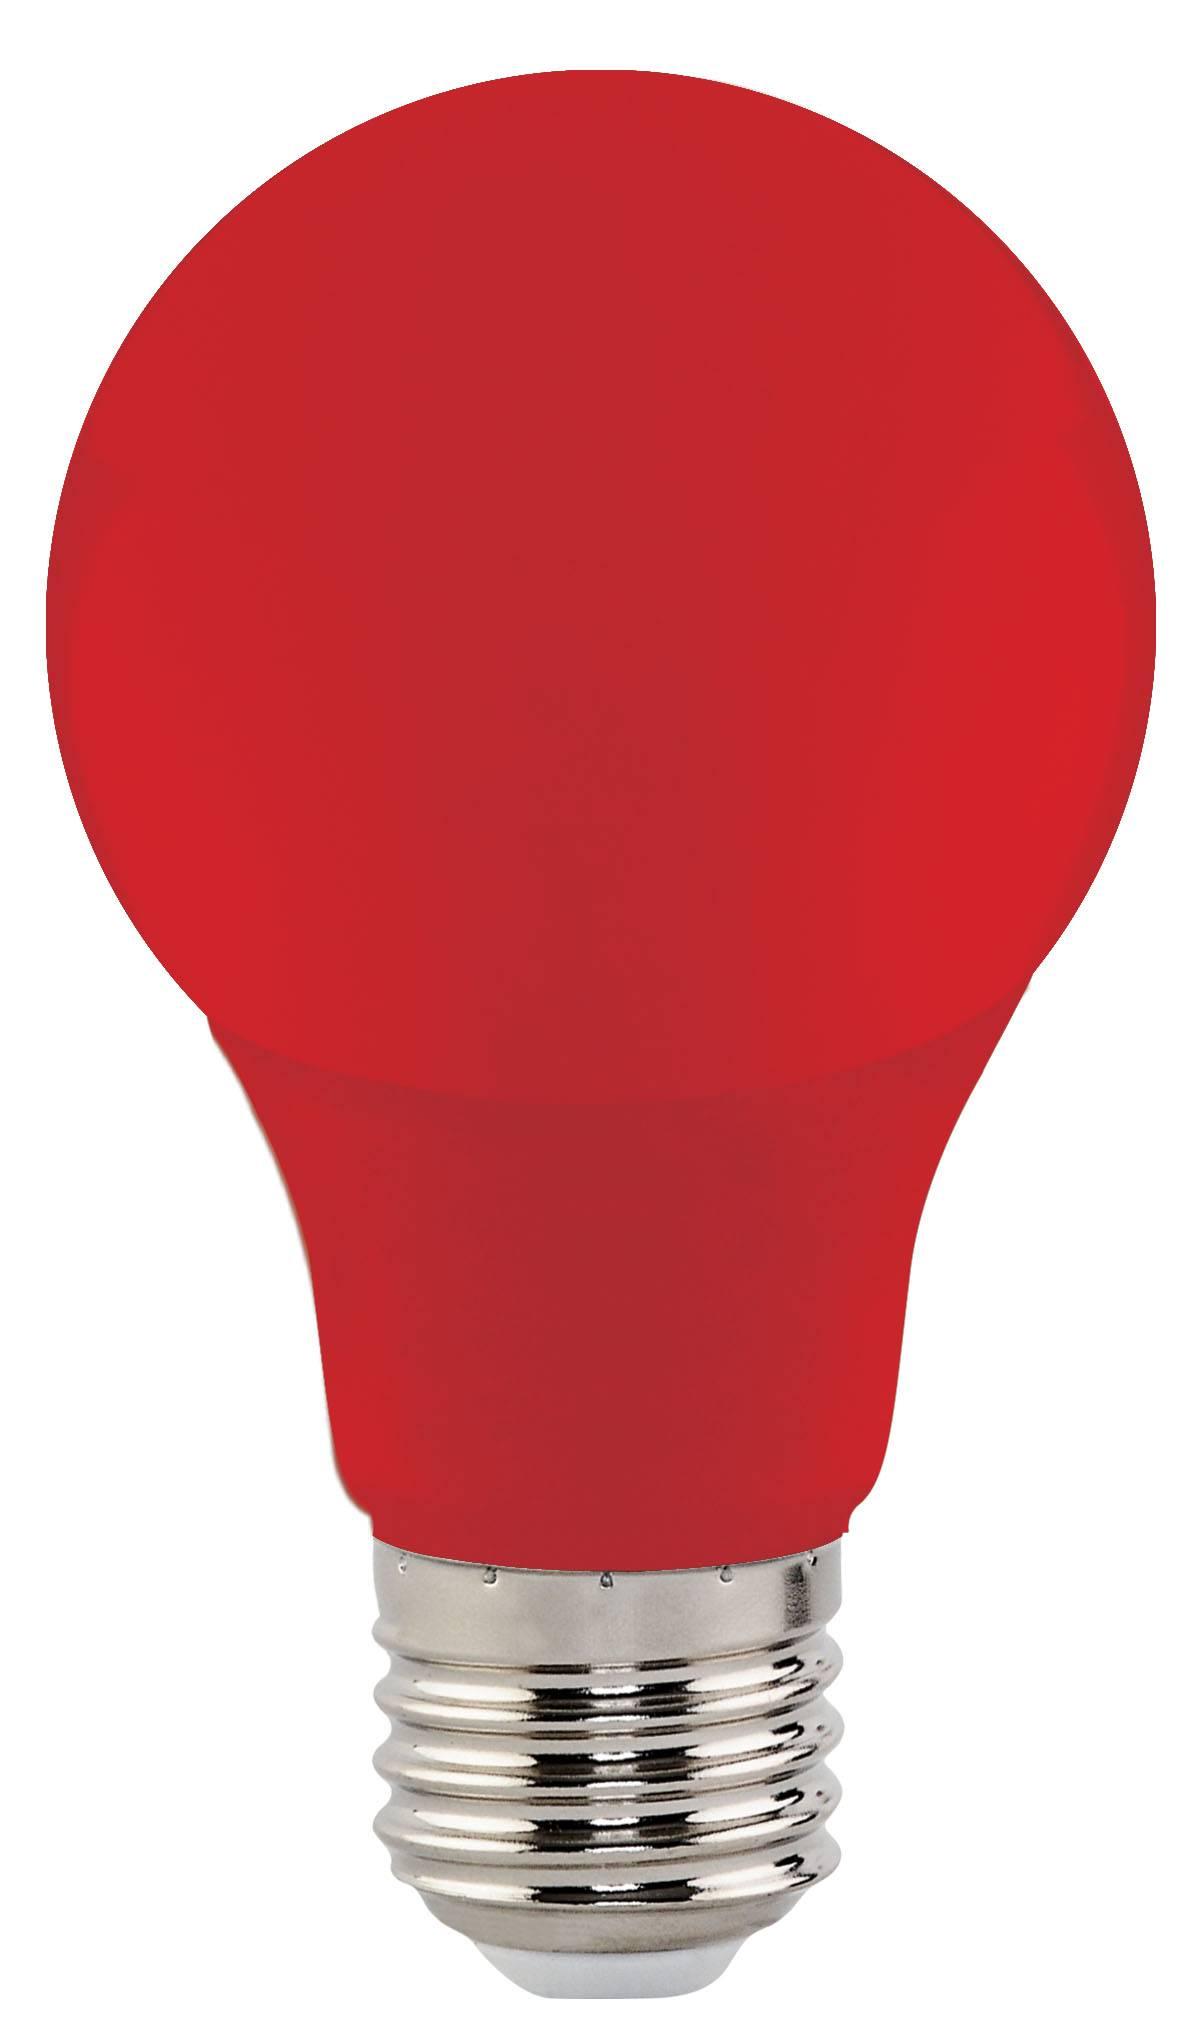 Лампочка 1 красный цвет. Лампа светодиодная led 3вт e27 красный шар (lb-375). Horoz Electric лампы. Светодиодная лампа красный спектр е27. Цветные светодиодные лампы е27.